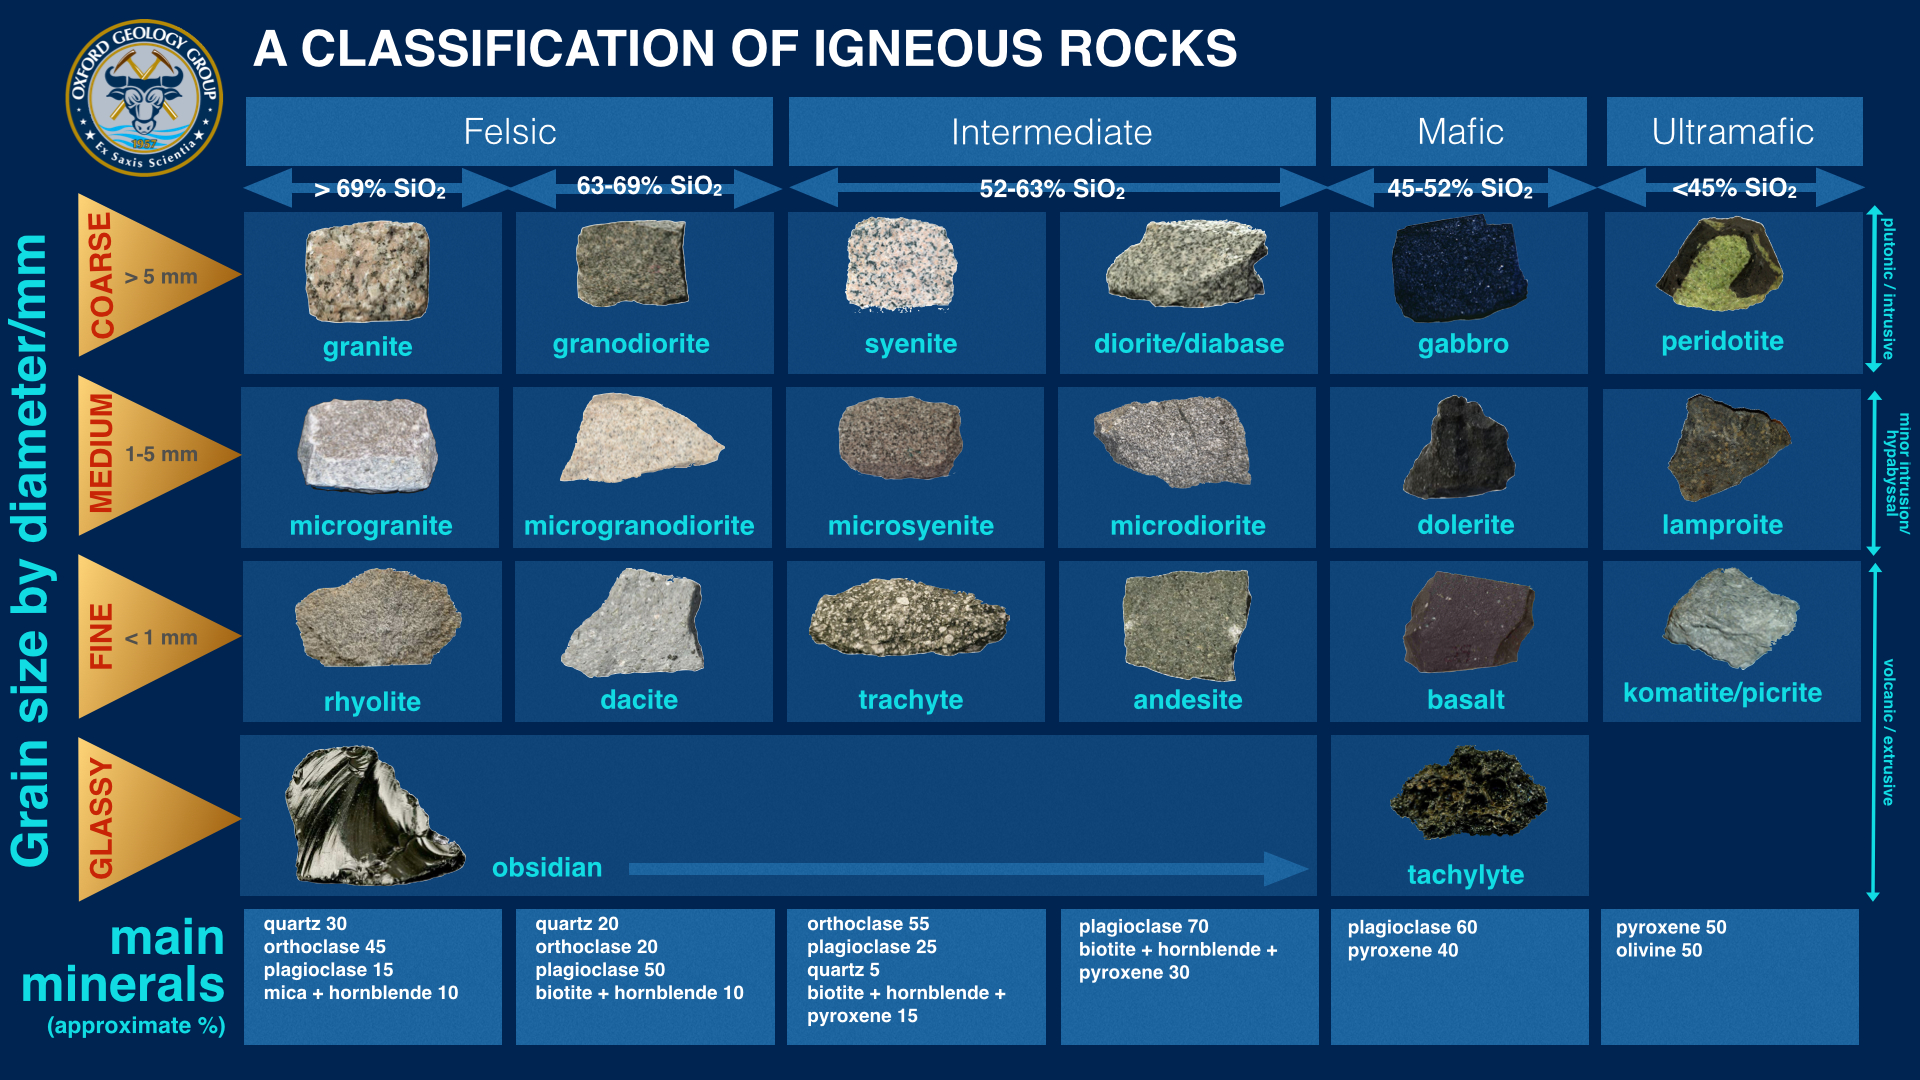 https://alexandriadarcy.com/tag/igneous-rocks/